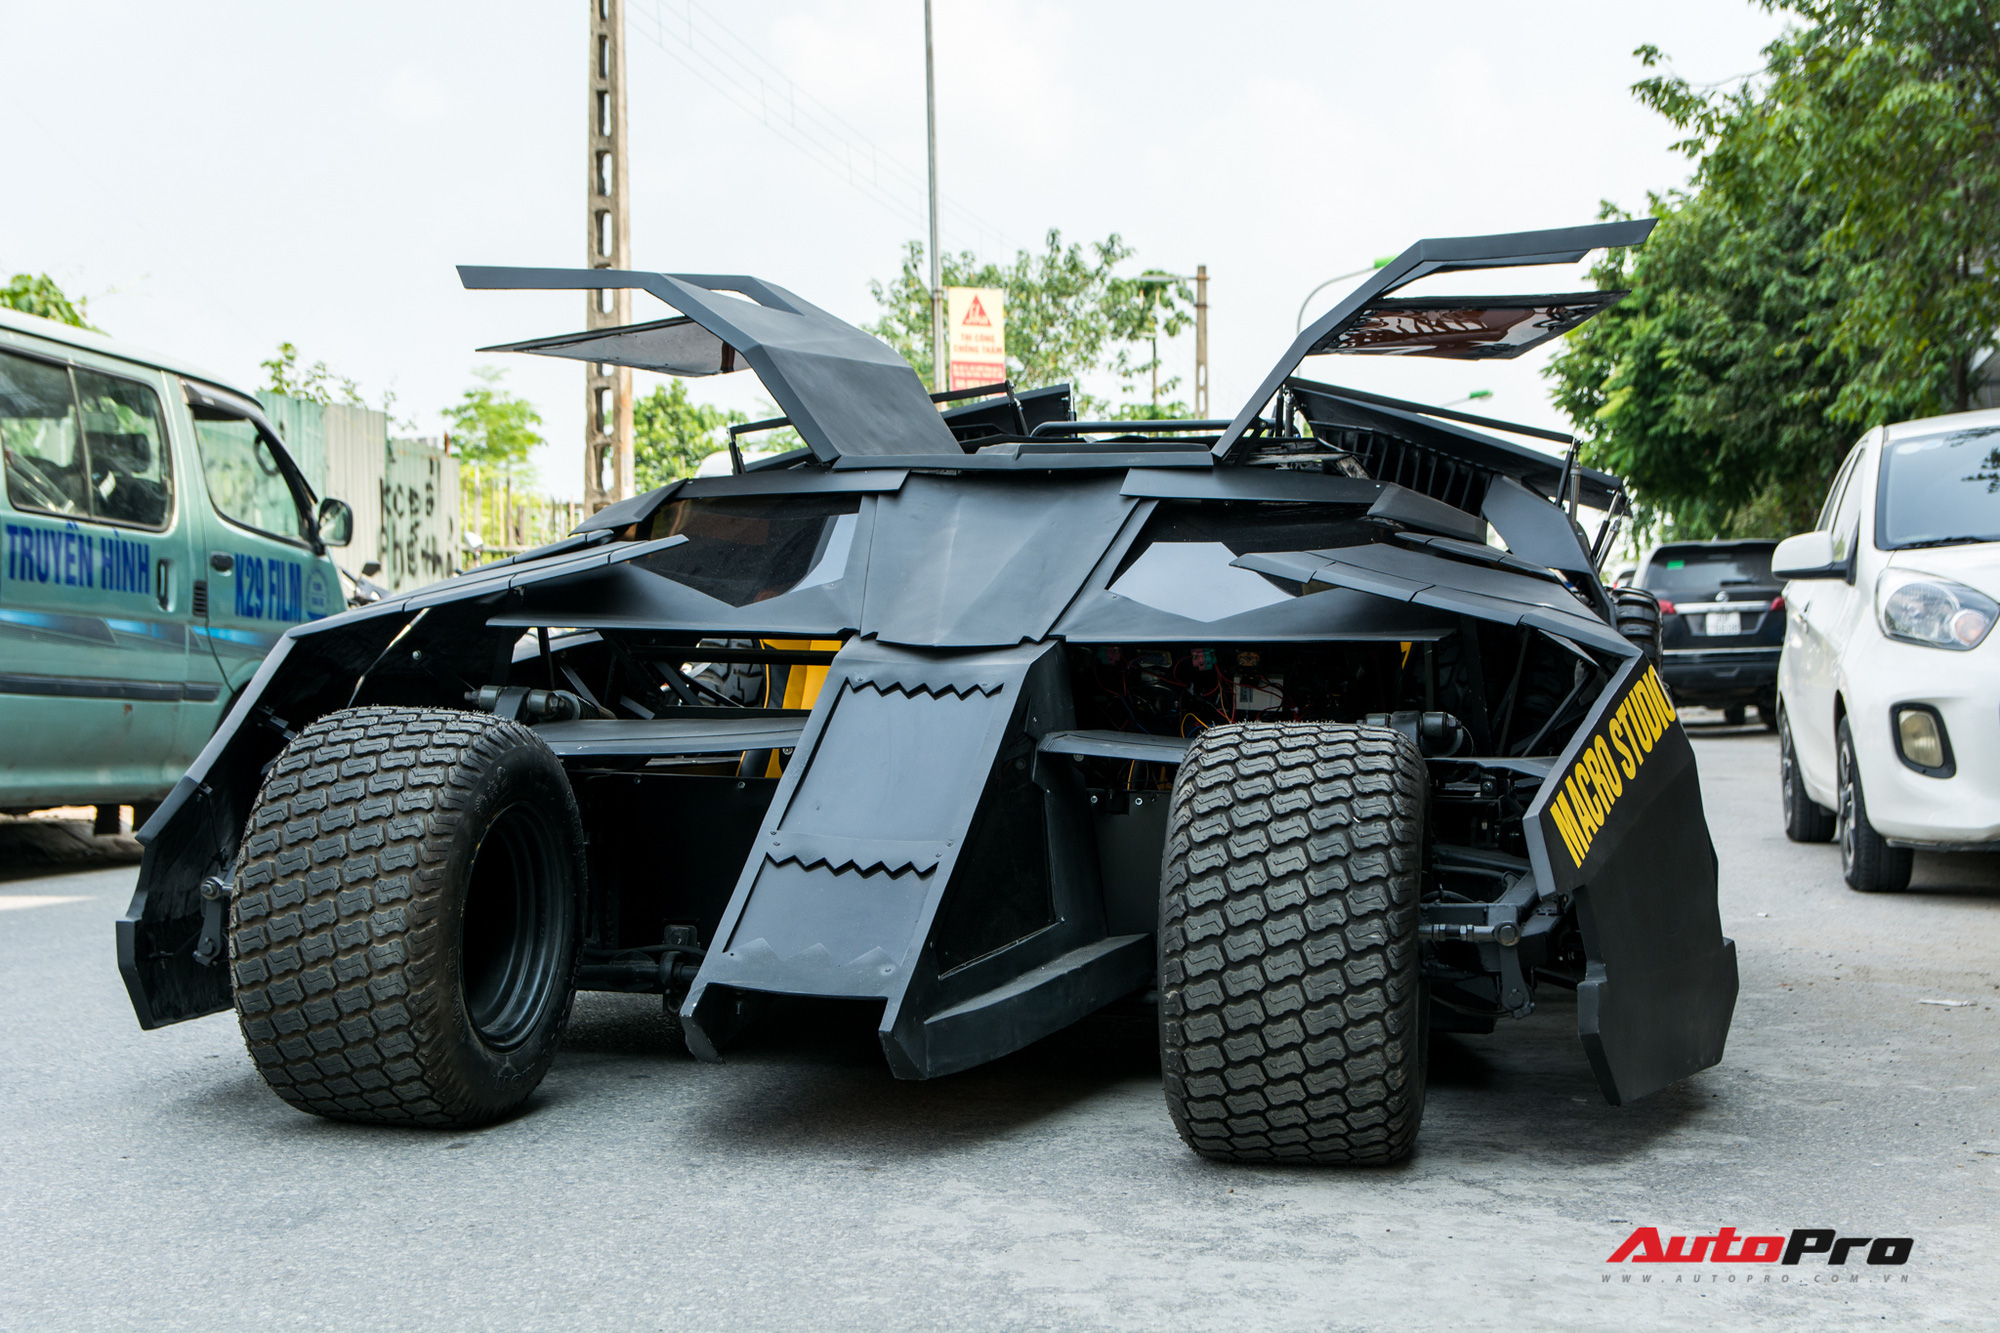 Gặp chàng sinh viên Việt tự làm ‘siêu xe’ Batmobile đang gây sốt: Cặm cụi 10 tháng, tốn nửa tỷ đồng nhưng vẫn chưa có điểm dừng - Ảnh 3.